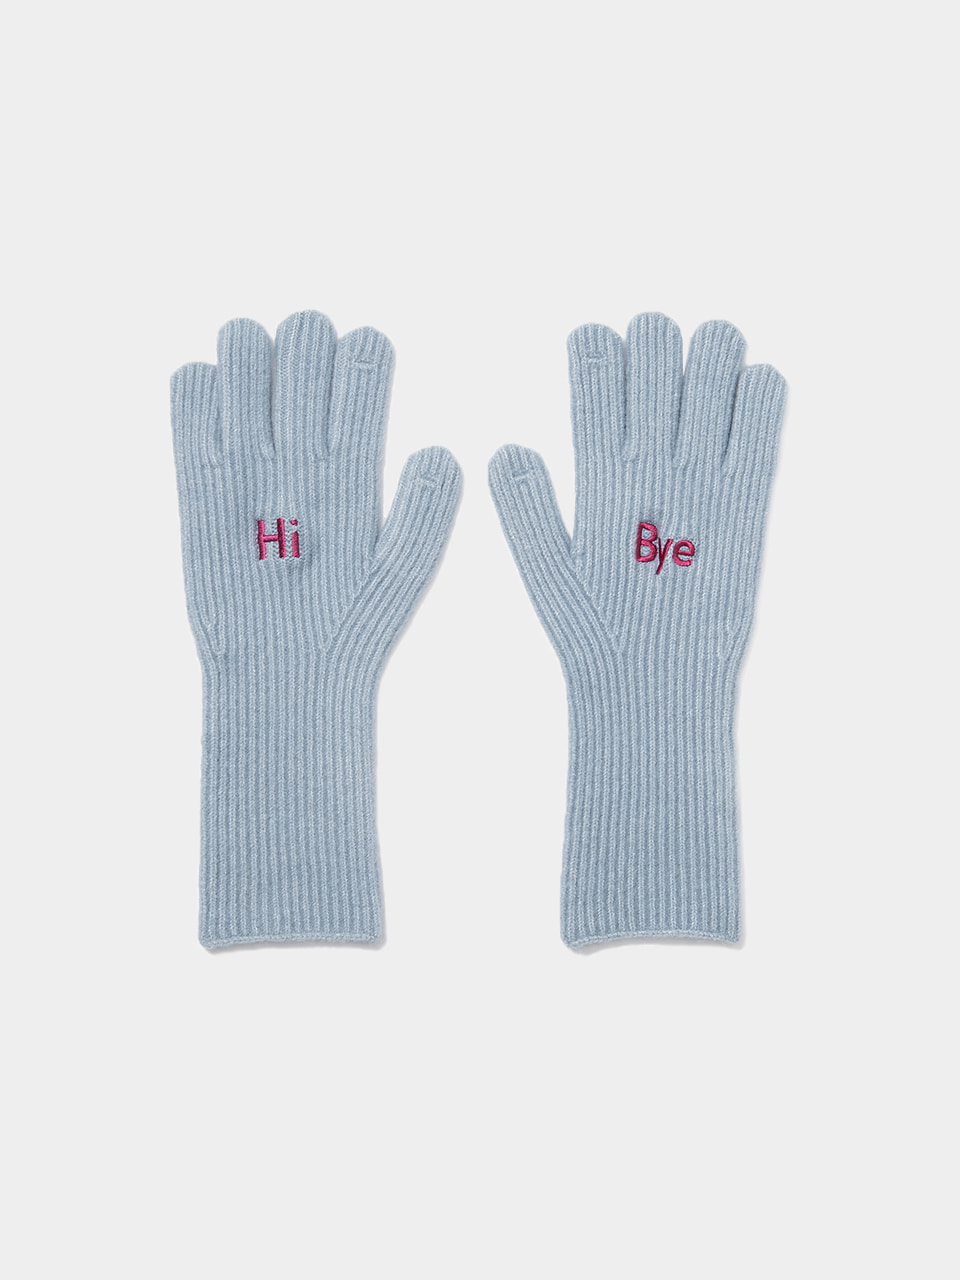 hi bye wool gloves - 2colorBRENDA BRENDEN